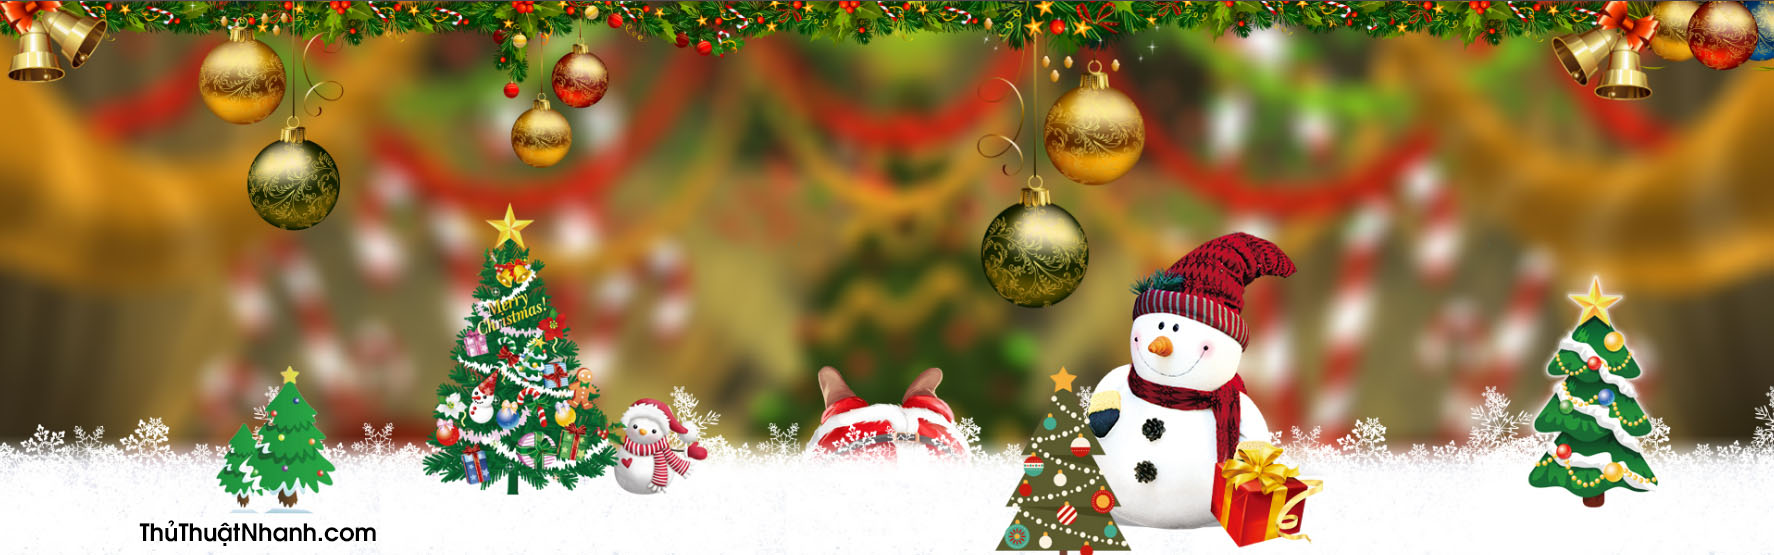 Chào đón mùa lễ hội Noel với bức ảnh bìa mang đậm nét đặc trưng của mùa Giáng sinh. Hình ảnh các ngôi sao đêm và cây thông được trang trí với những hạt tuyết rơi phủ trắng, cùng với chữ \